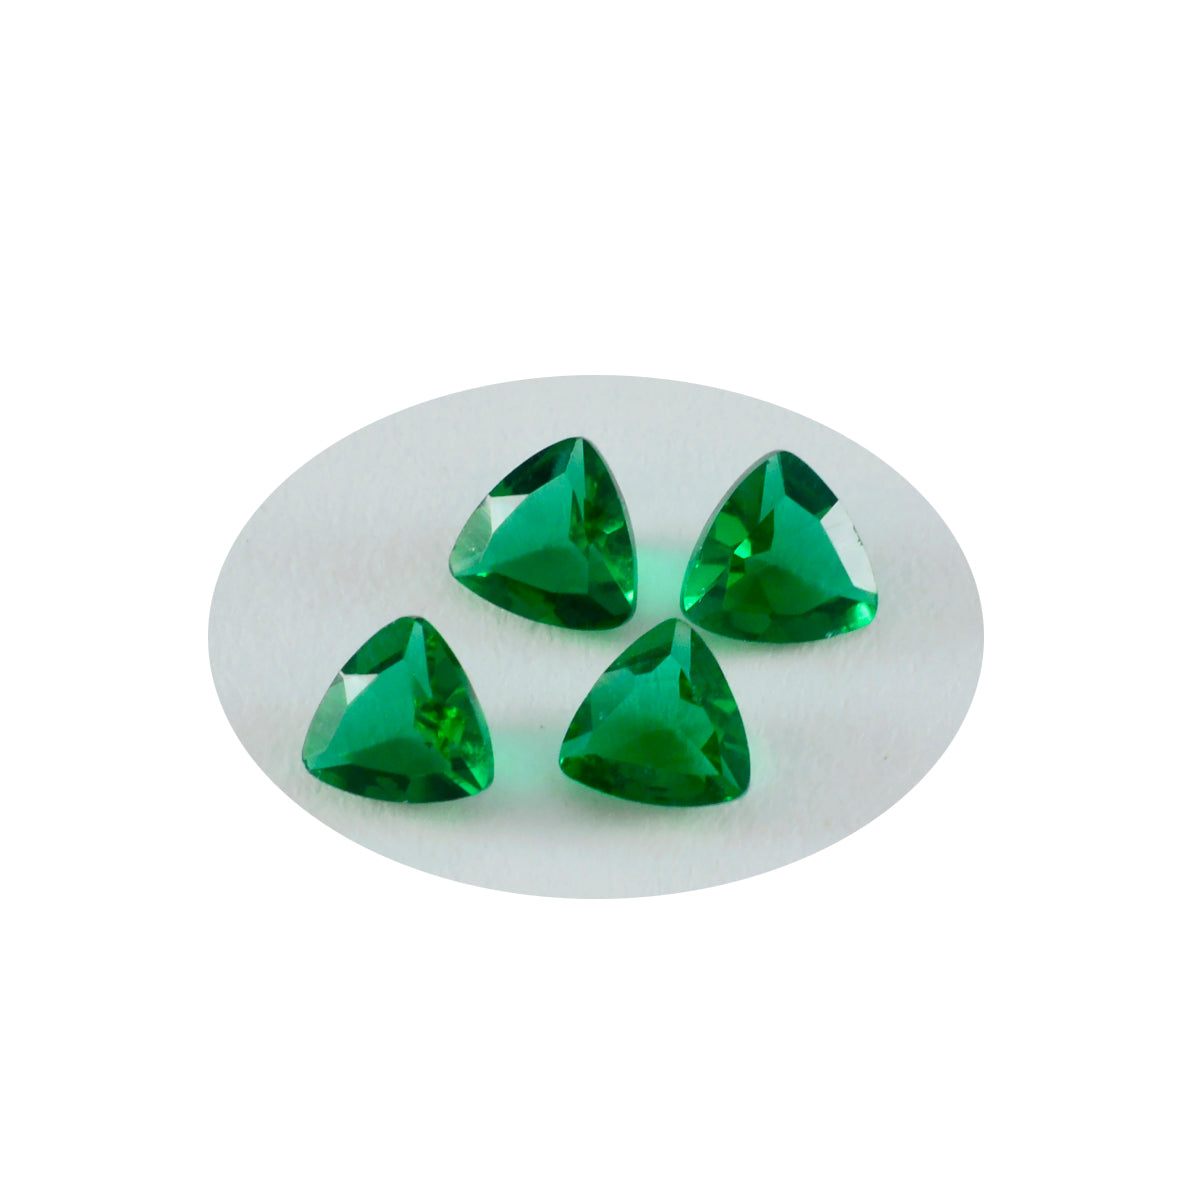 Riyogems 1 pièce émeraude verte cz à facettes 8x8mm forme trillion qualité incroyable pierres précieuses en vrac